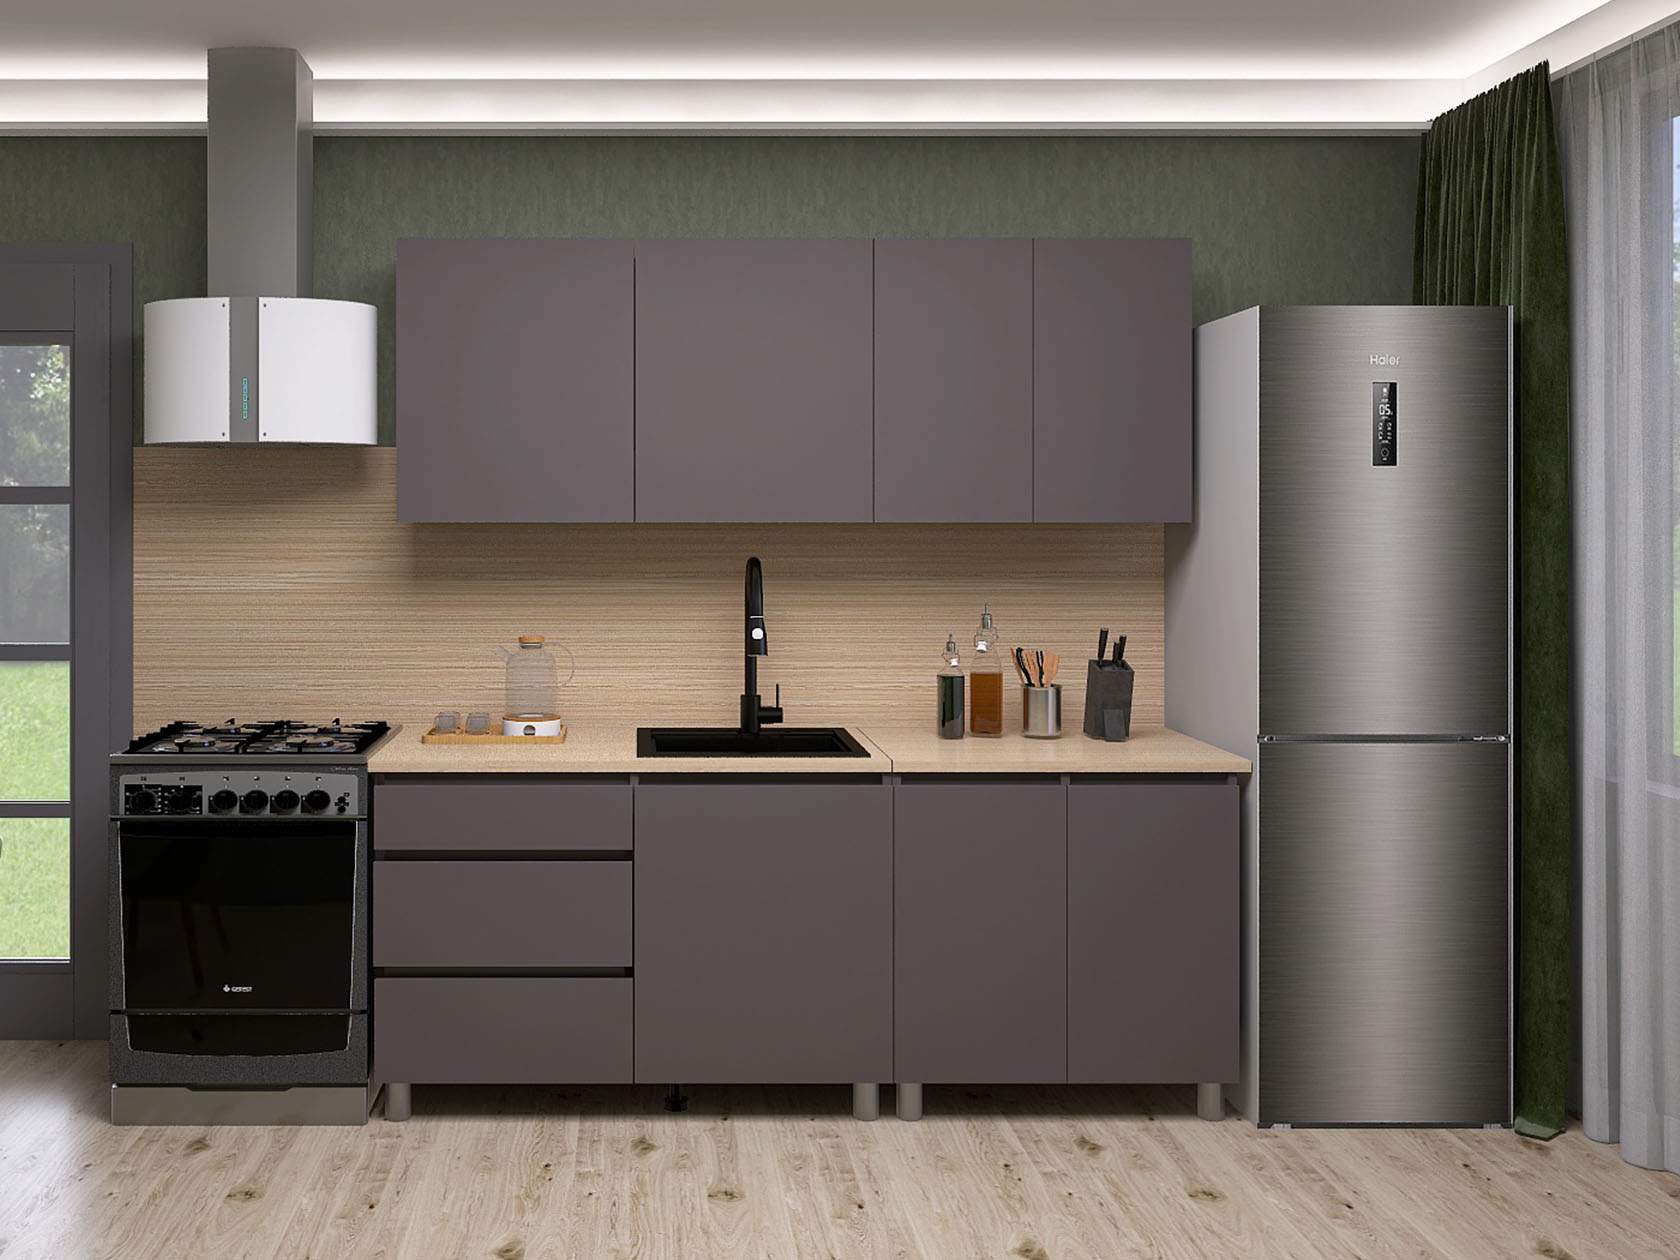 Кухонный гарнитур СВ-Мебель Денвер серый, 200 см - купить в MEB96(DBS), цена на Мегамаркет